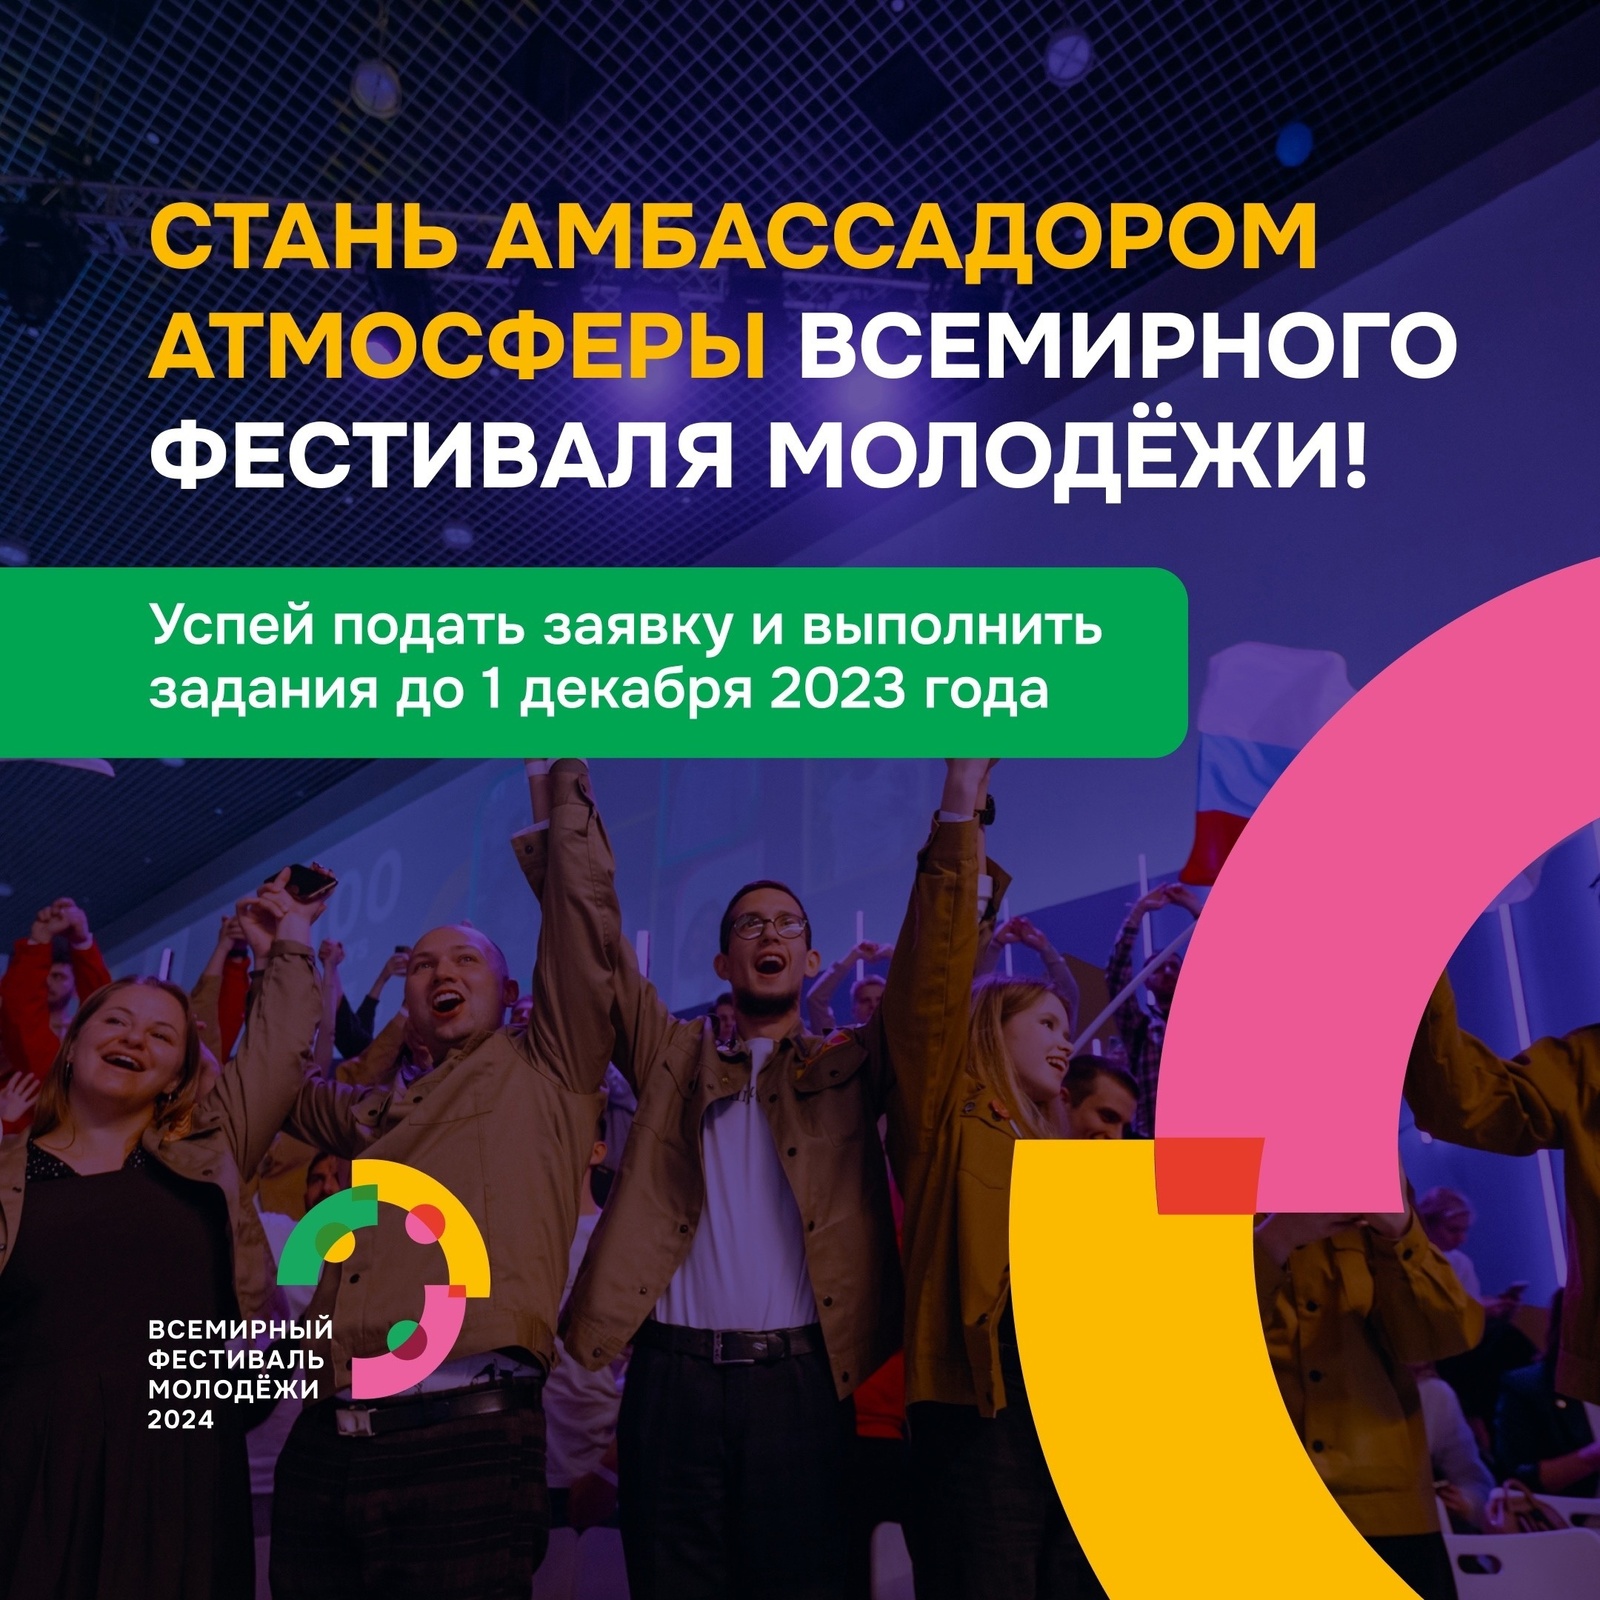 Подать заявку на программу отбора амбассадоров атмосферы Всемирного фестиваля молодёжи можно до 1 декабря 2023 года